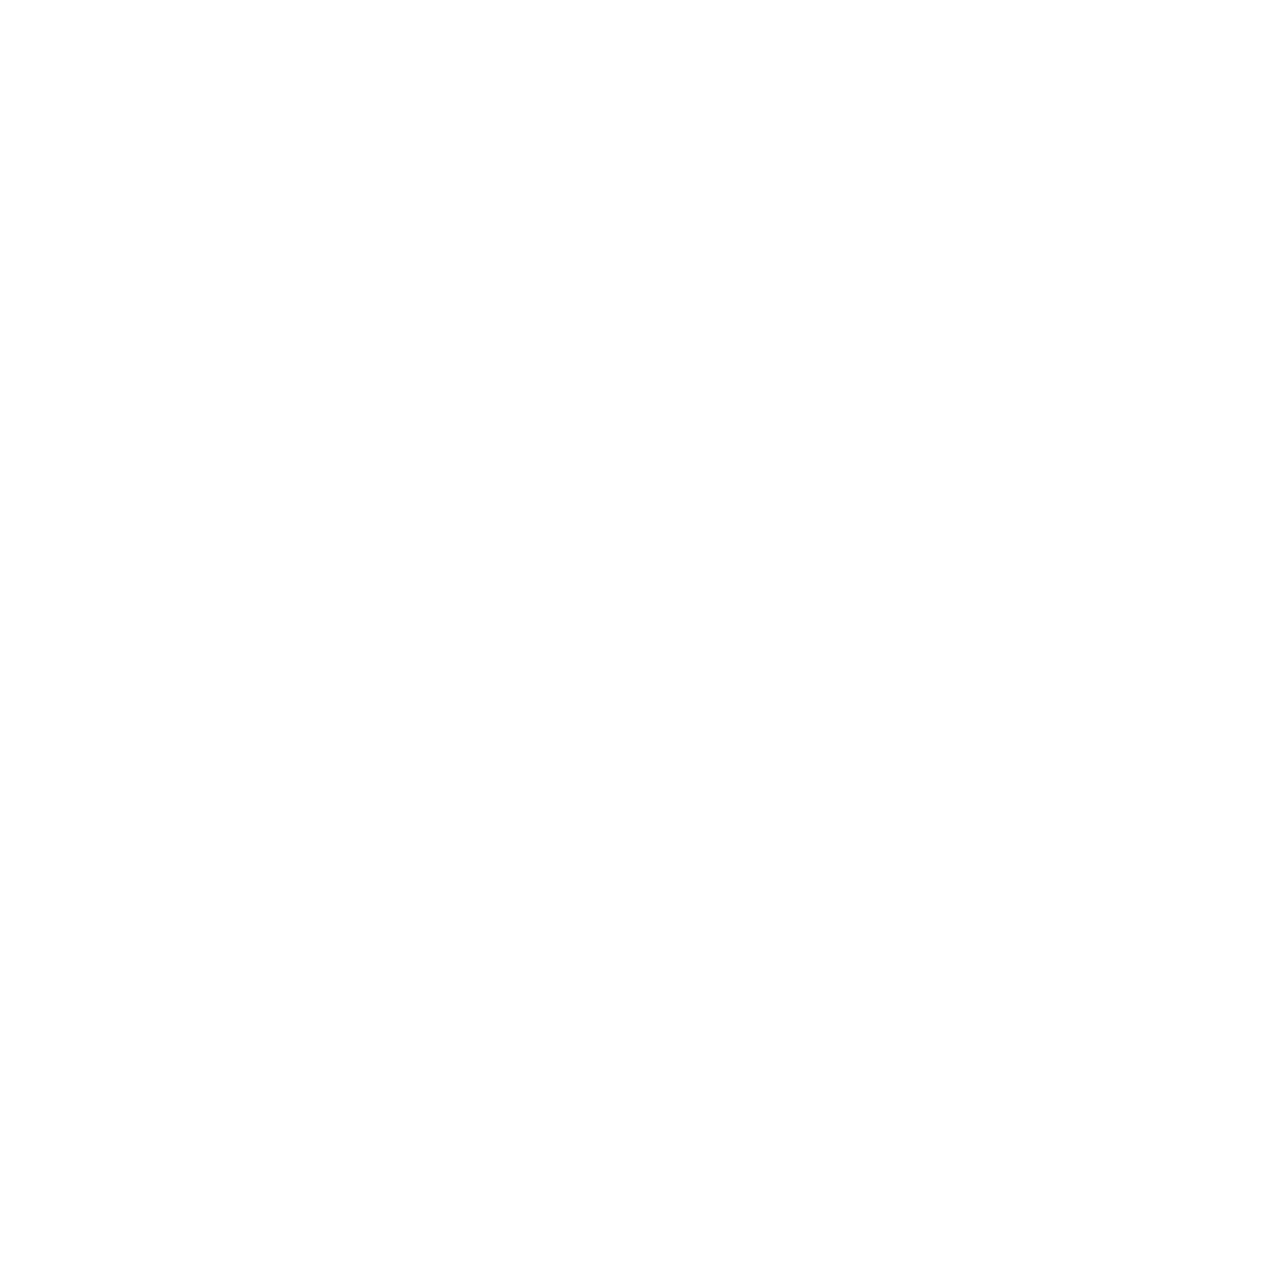 Biomaxin